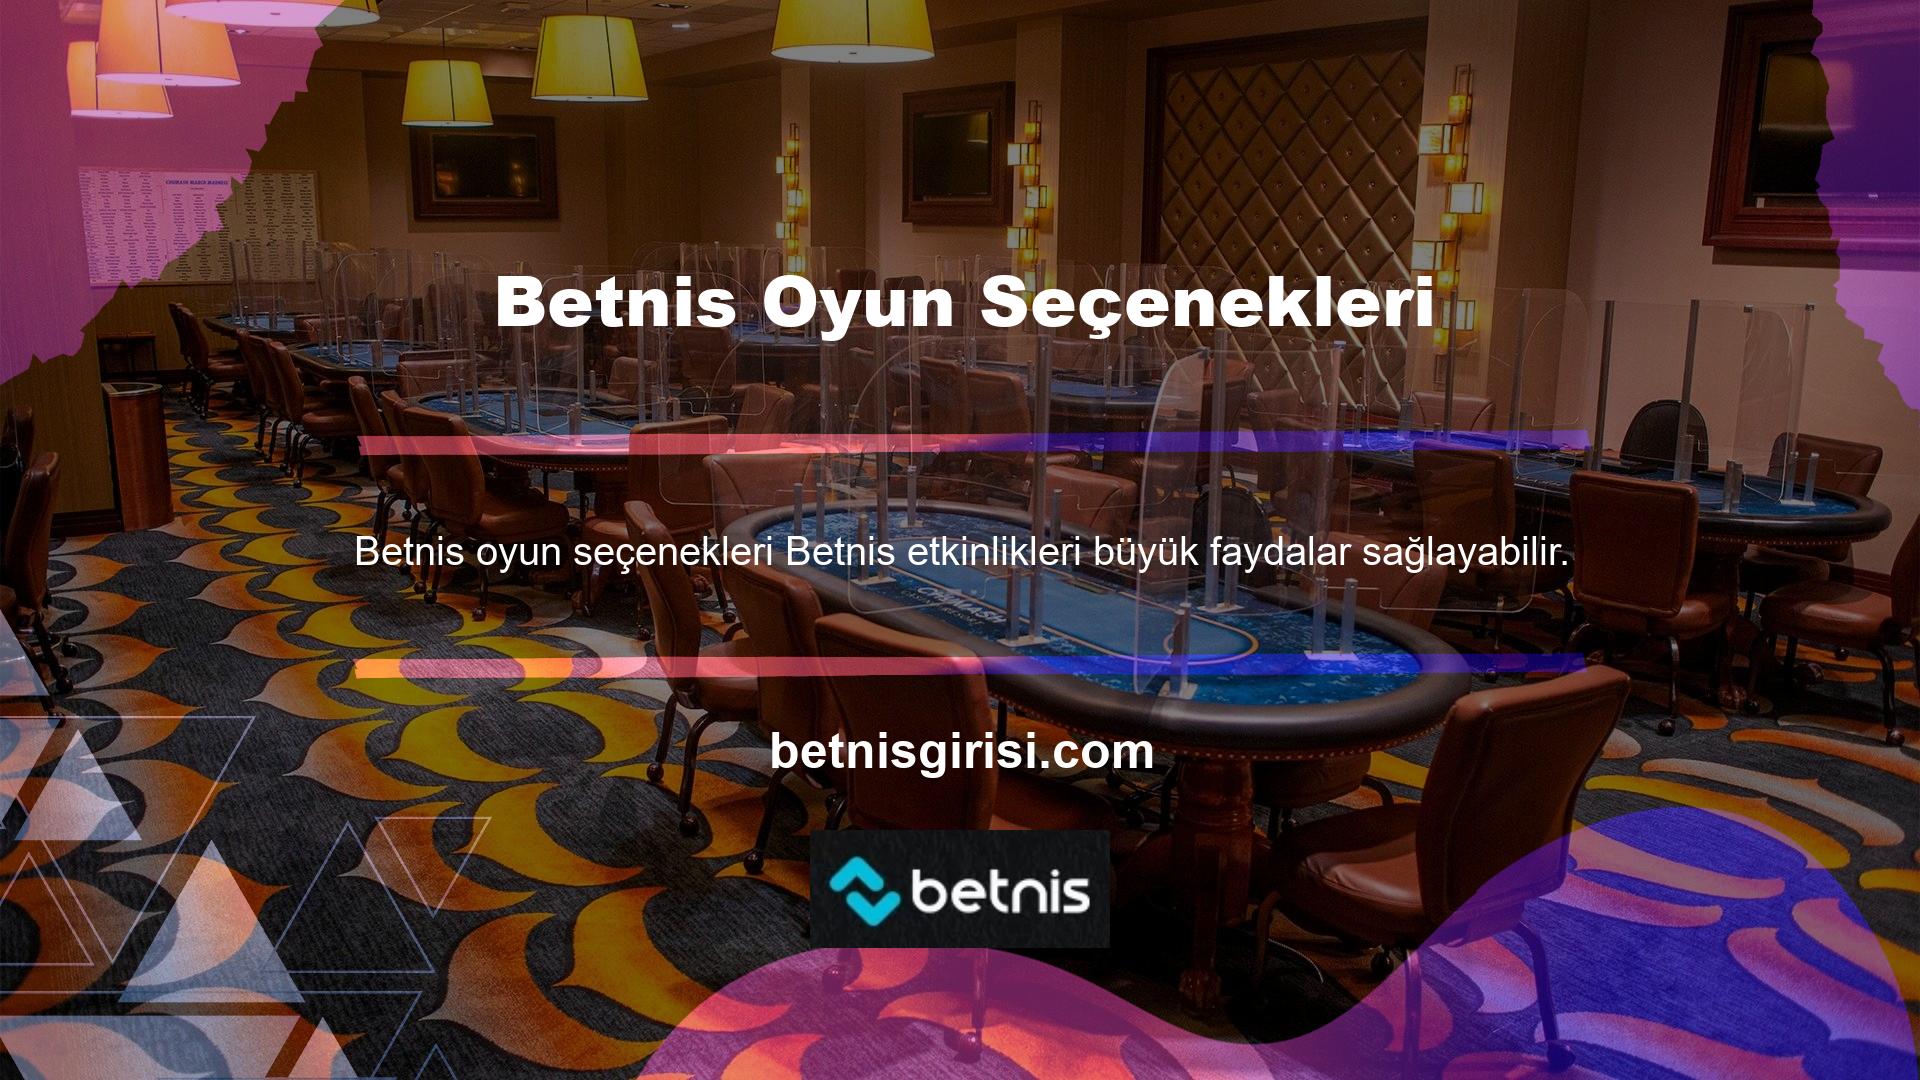 Dünyaca ünlü Betnis canlı casino platformu, Türkiye'deki bahisçilere yüksek oranlar kazandırmak için karışık bonuslar ve bonus bahis seçenekleri sunuyor